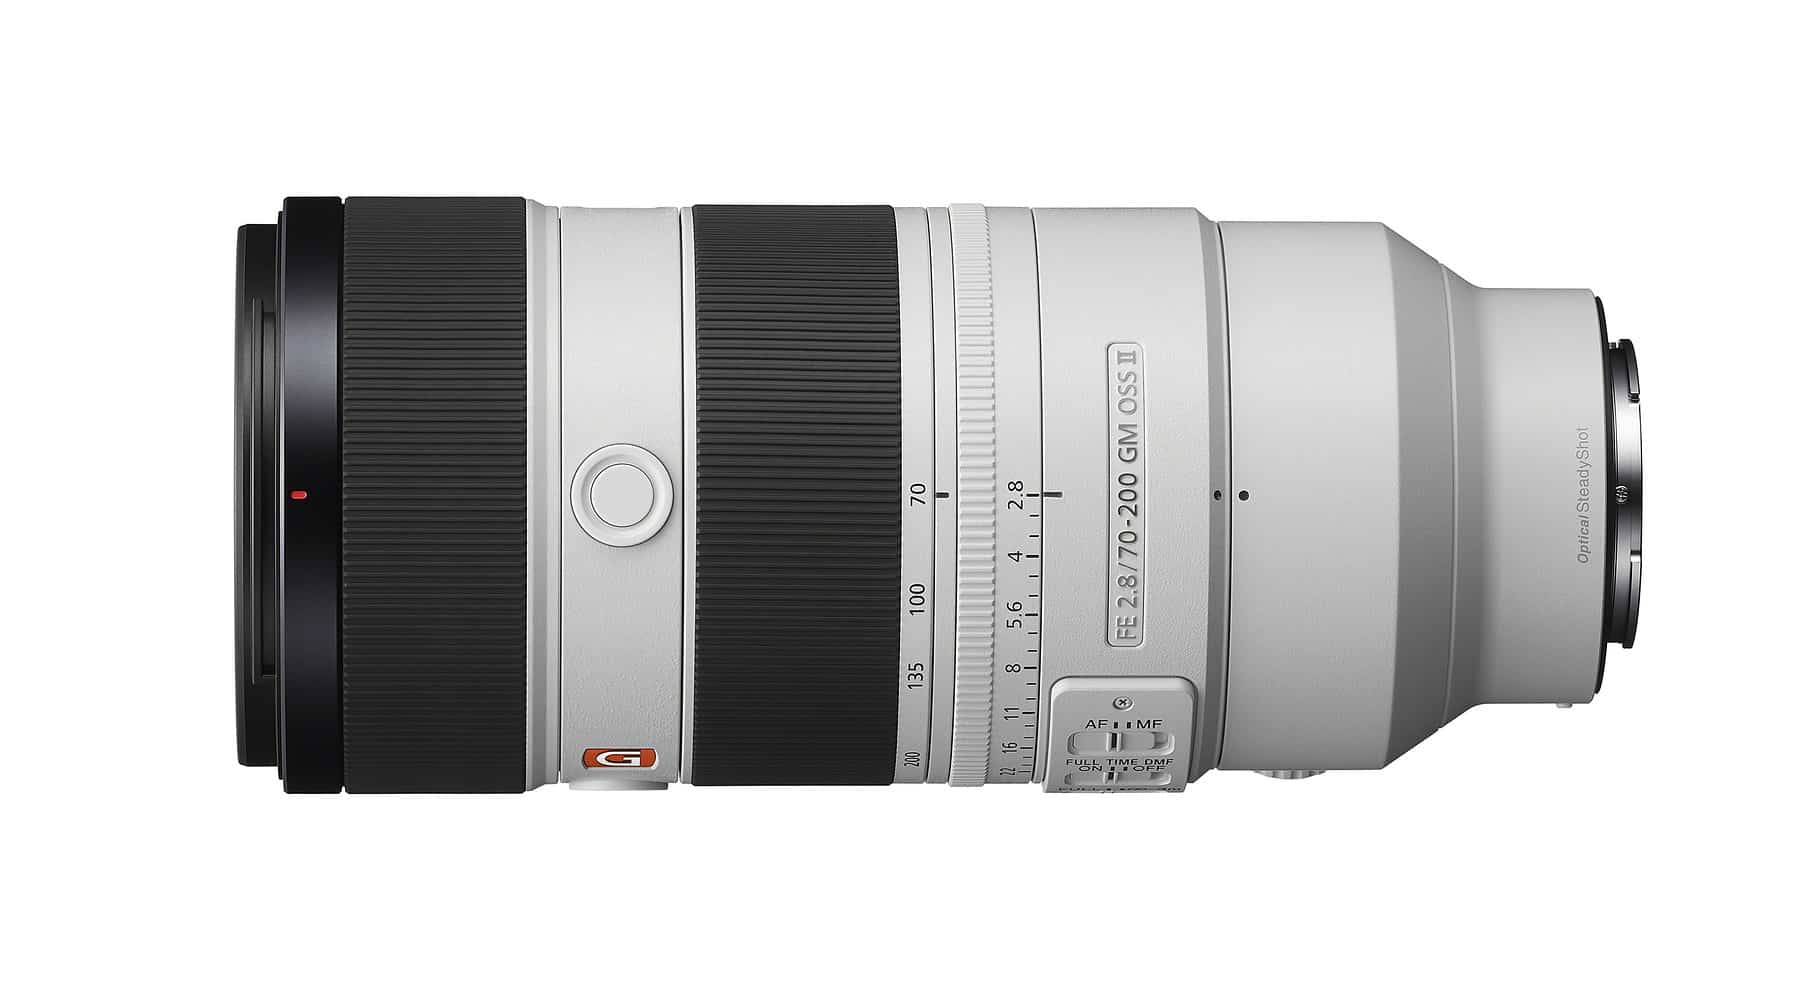 Ống kính Sony FE 70-200mm F2.8 GM OSS II ra mắt với thiết kế hoàn toàn mới